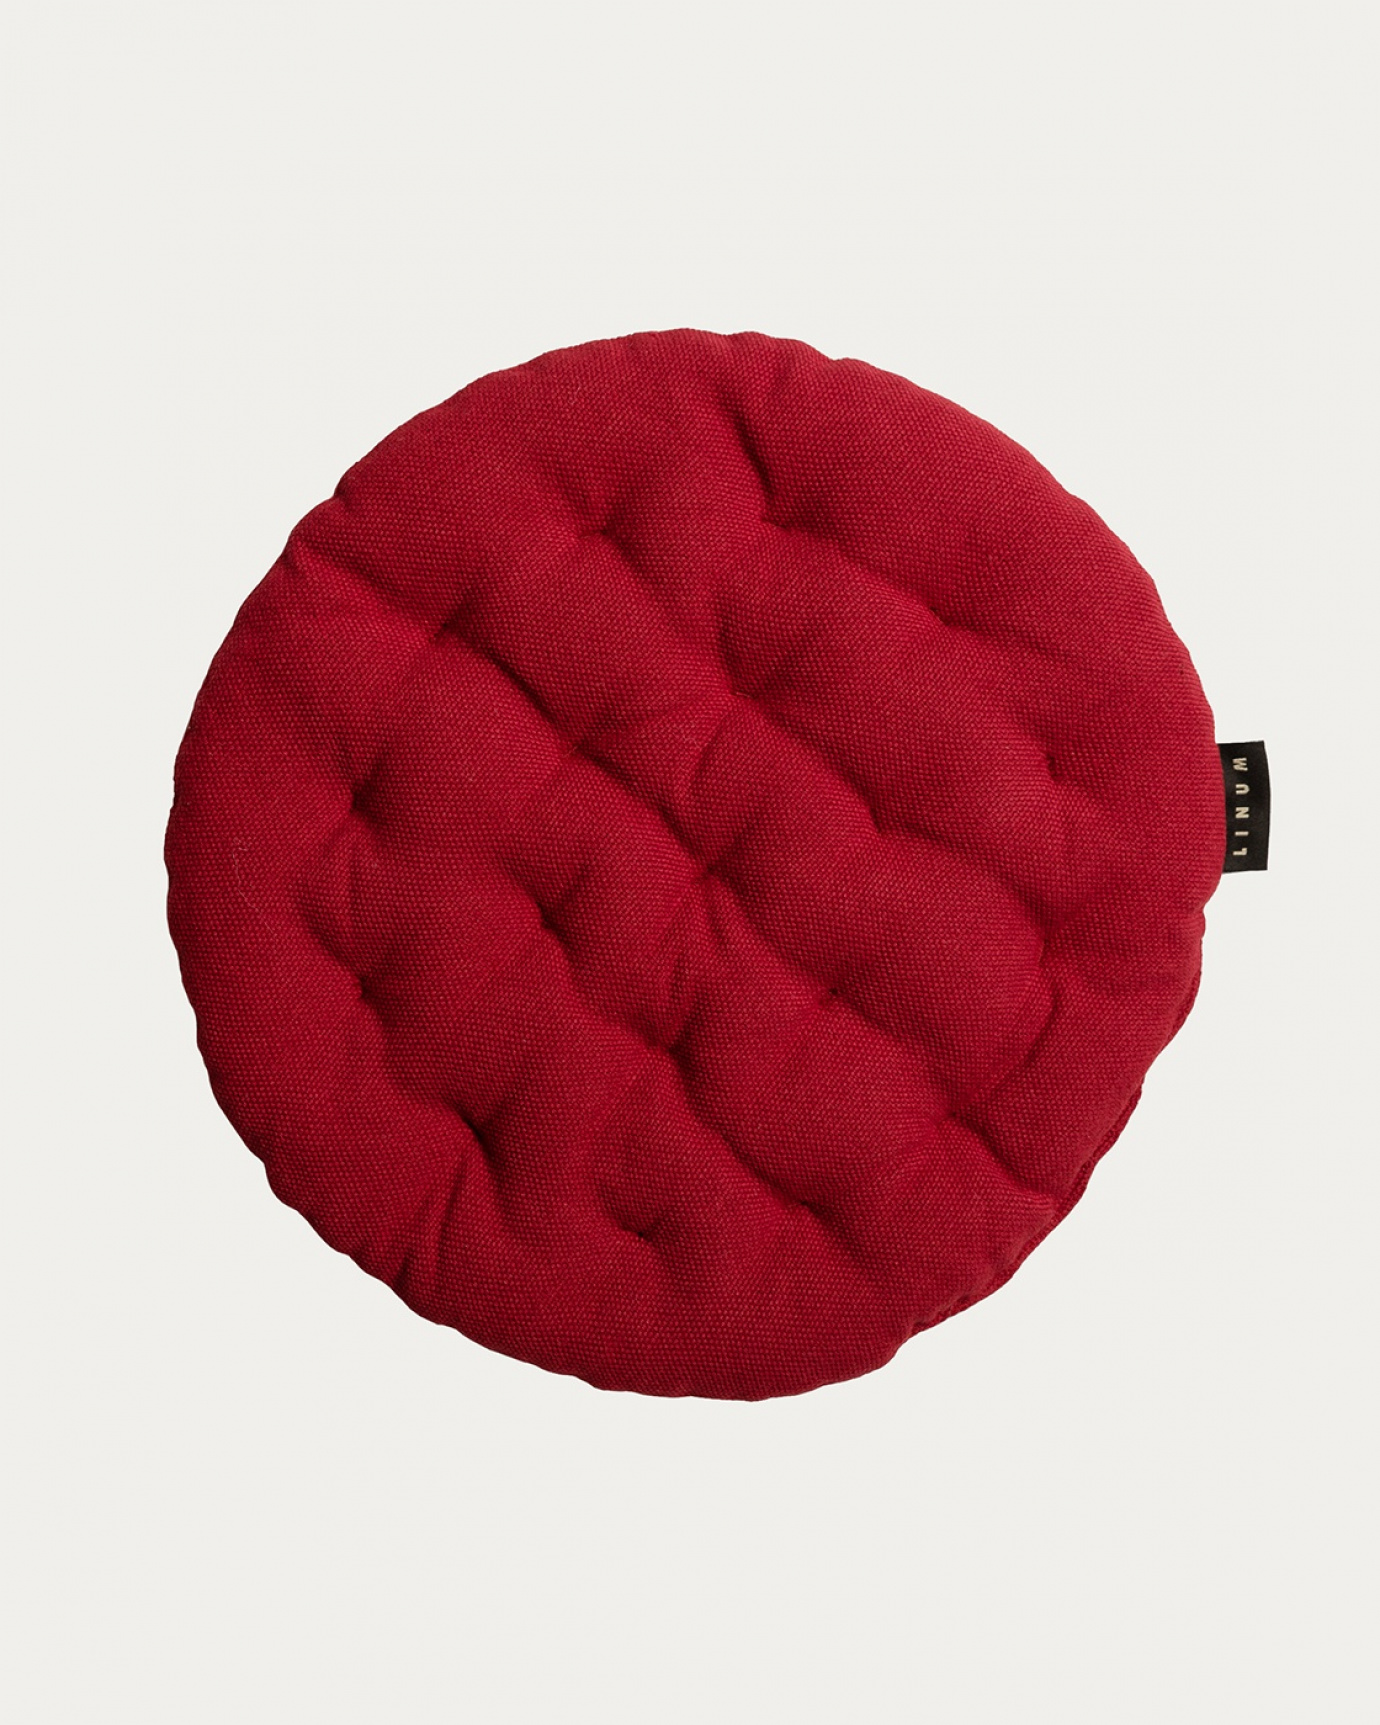 Produktbild rot PEPPER Sitzkissen aus weicher Baumwolle mit Füllung aus recyceltem Polyester von LINUM DESIGN. Größe ø37 cm.